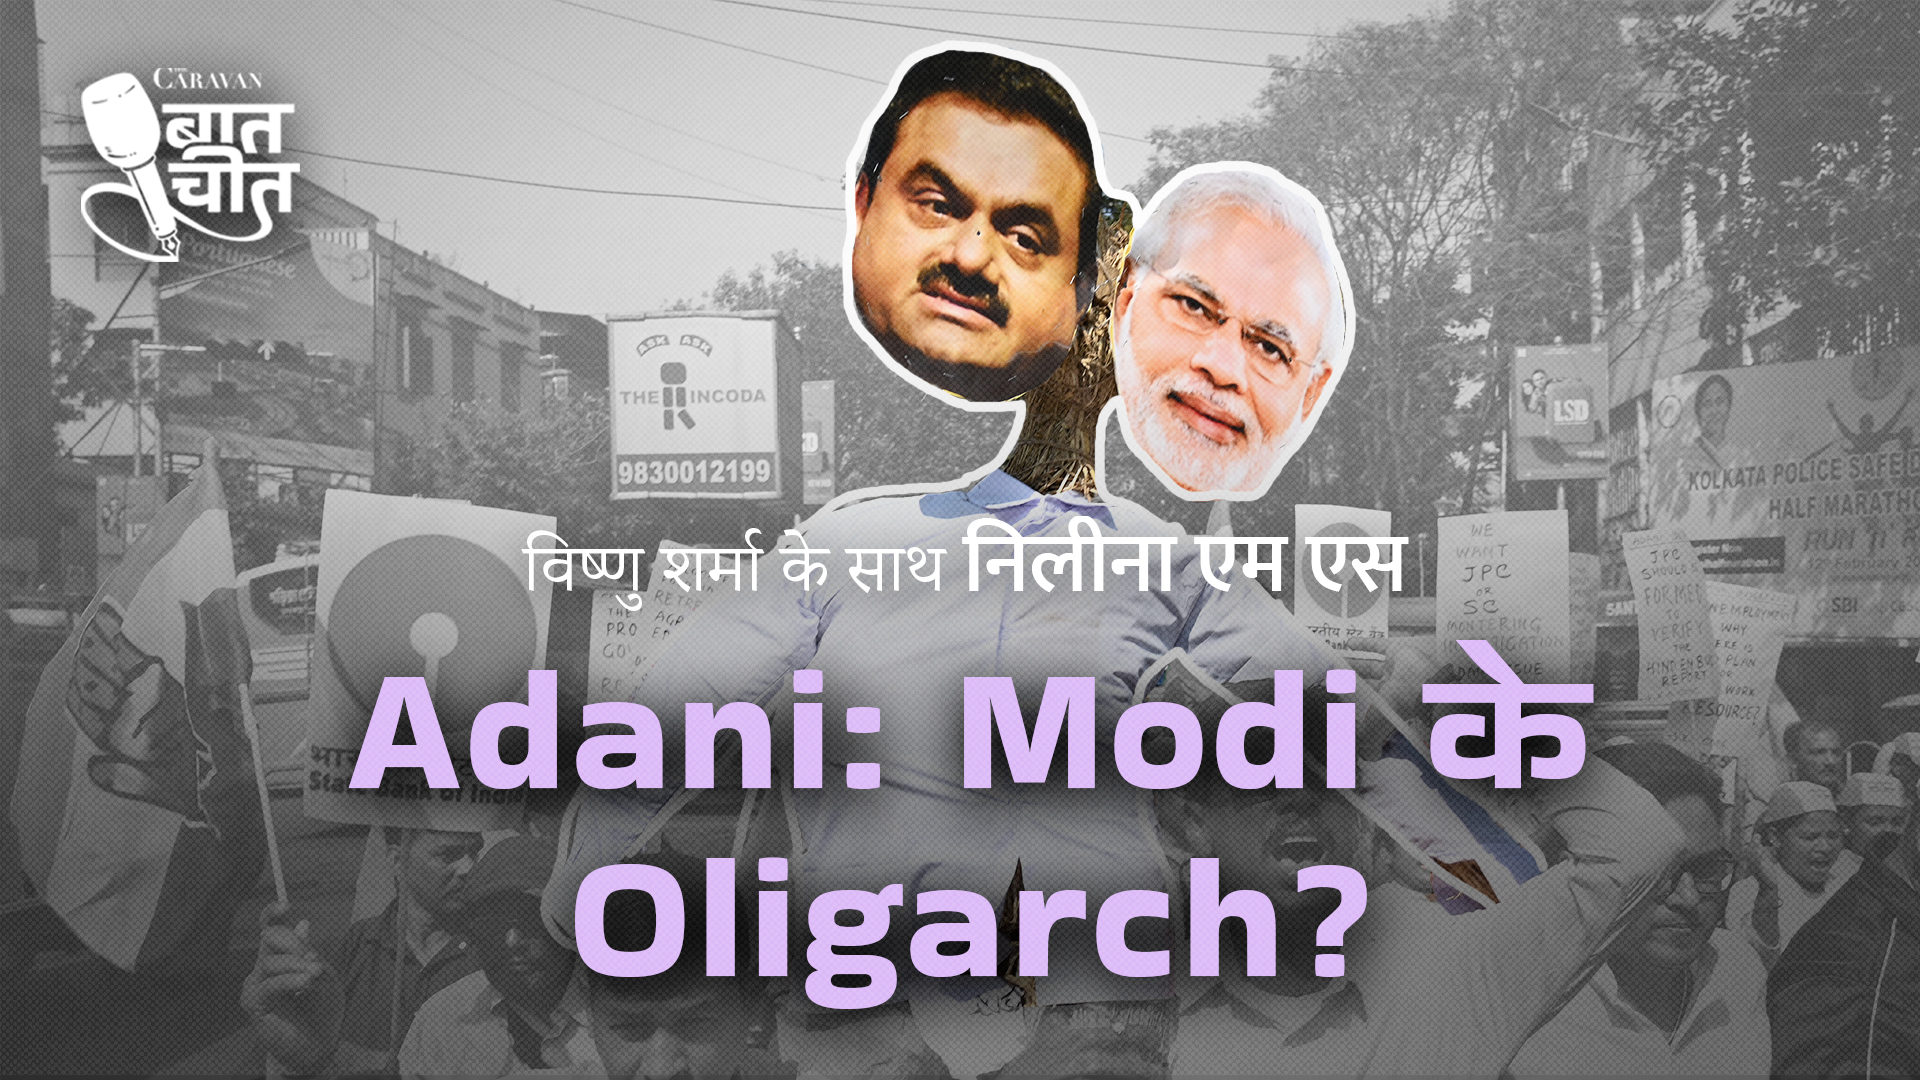 Caravan Baatcheet: Is Gautam Adani Narendra Modi’s oligarch?